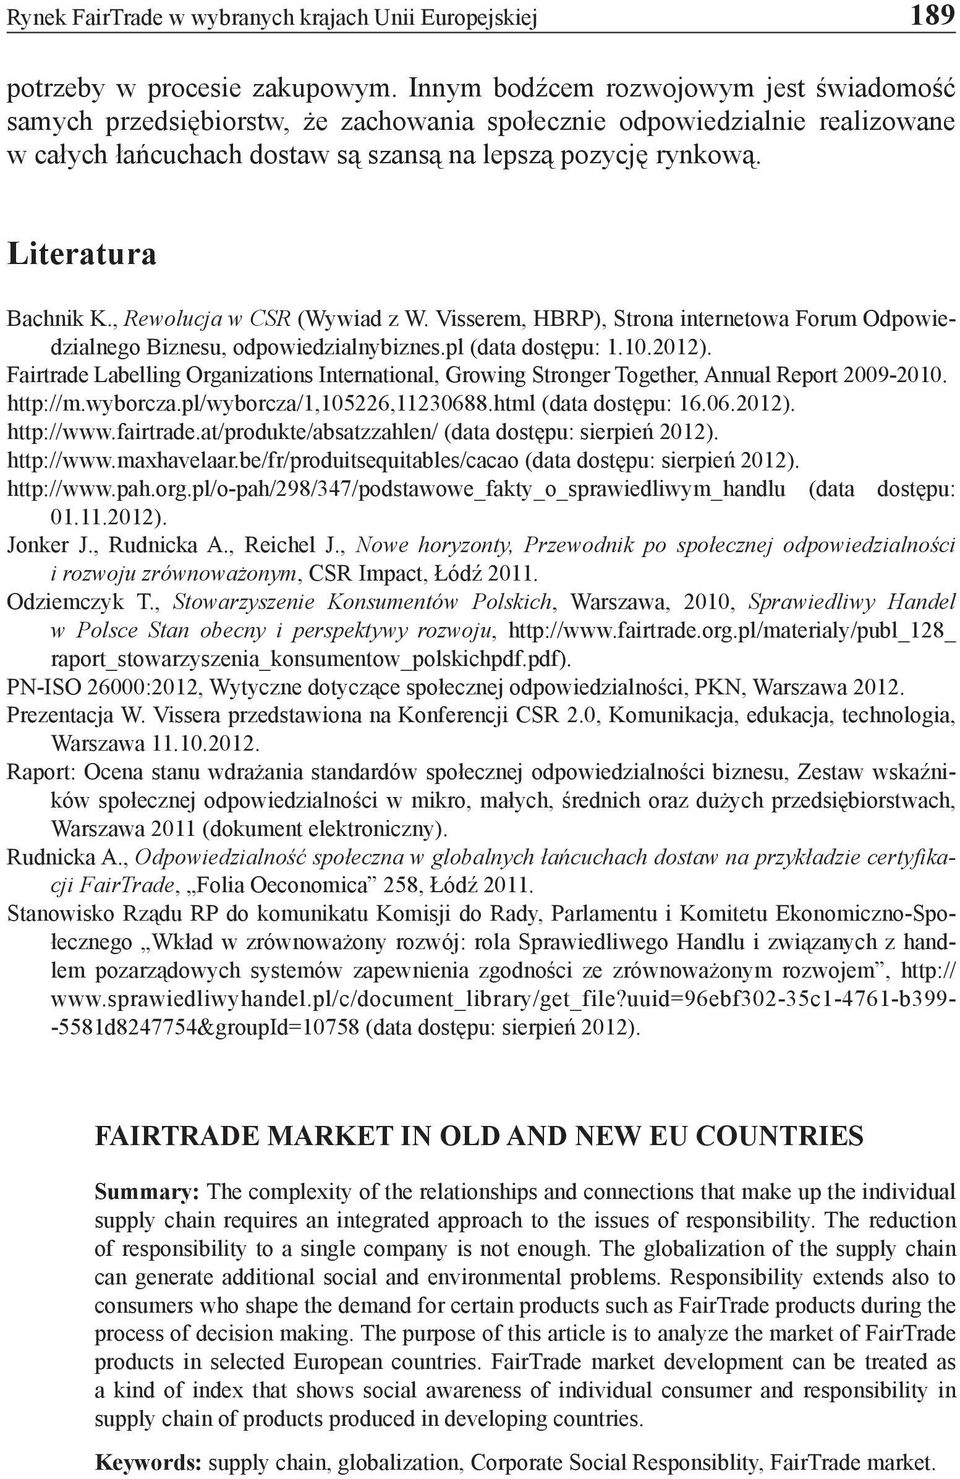 Literatura Bachnik K., Rewolucja w CSR (Wywiad z W. Visserem, HBRP), Strona internetowa Forum Odpowiedzialnego Biznesu, odpowiedzialnybiznes.pl (data dostępu: 1.10.2012).